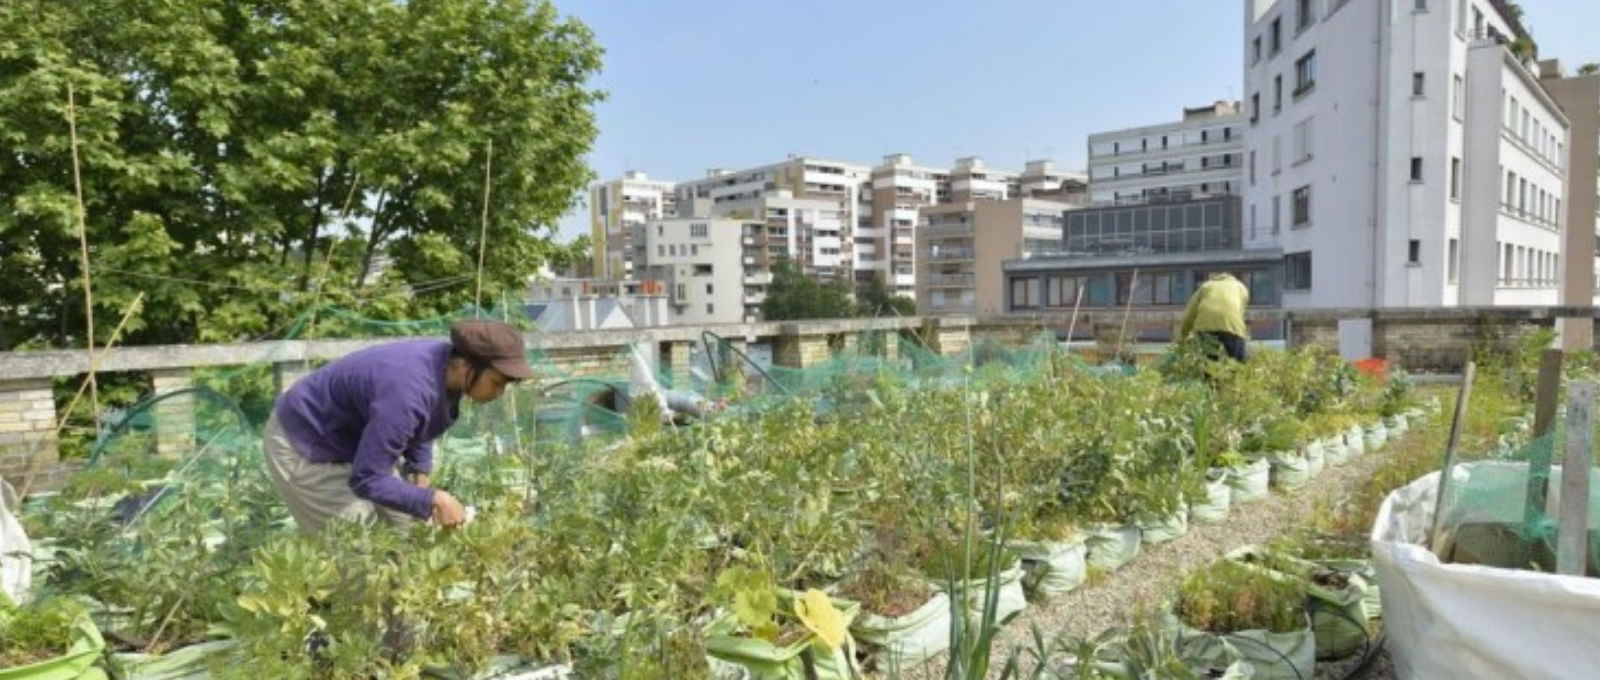 Evolution des villes : les fermes urbaines font leur apparition